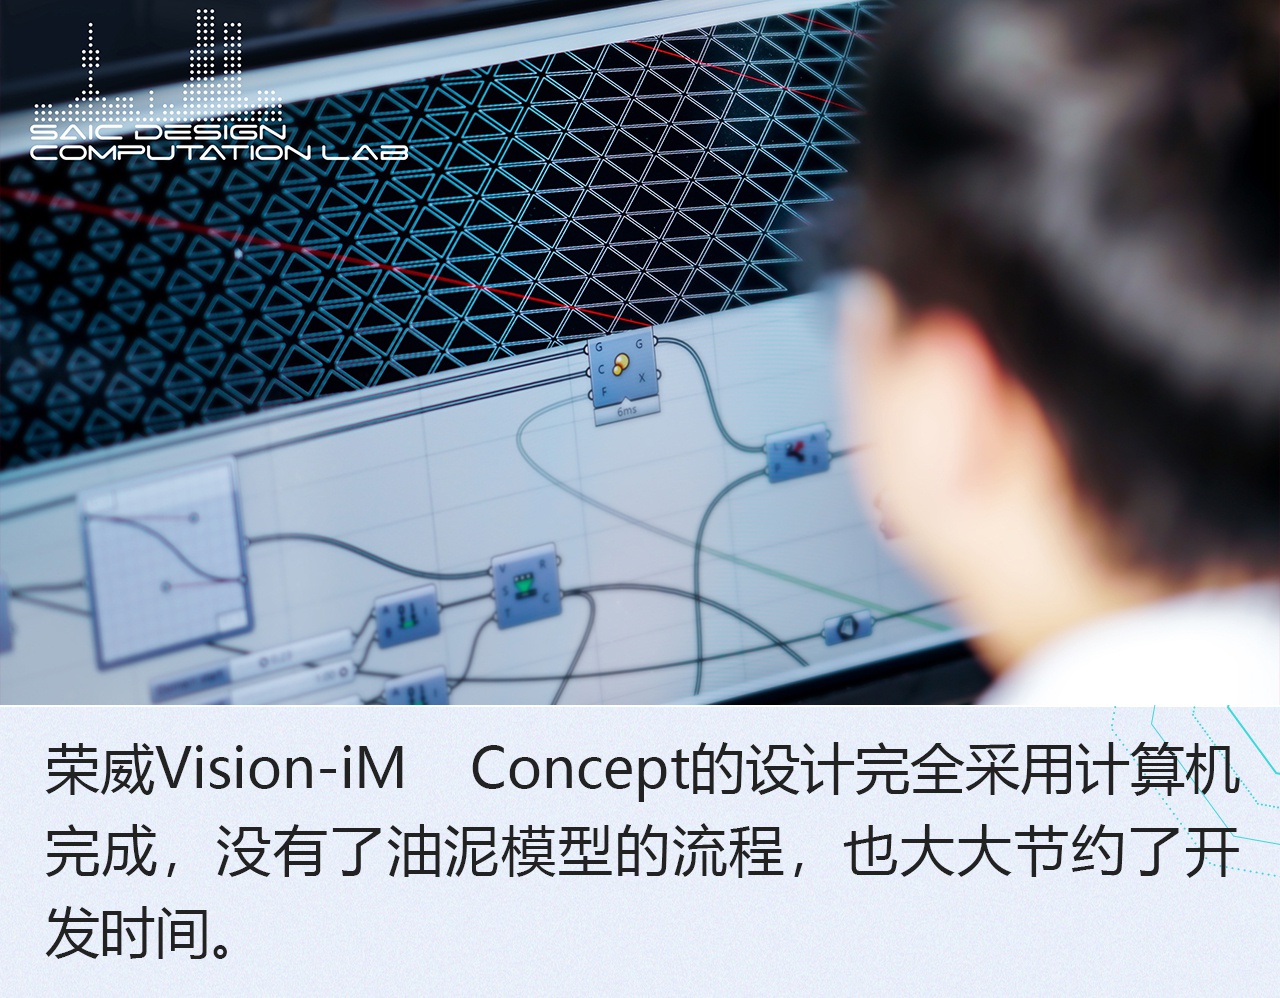 2019广州车展：荣威Vision-iM概念车设计解析